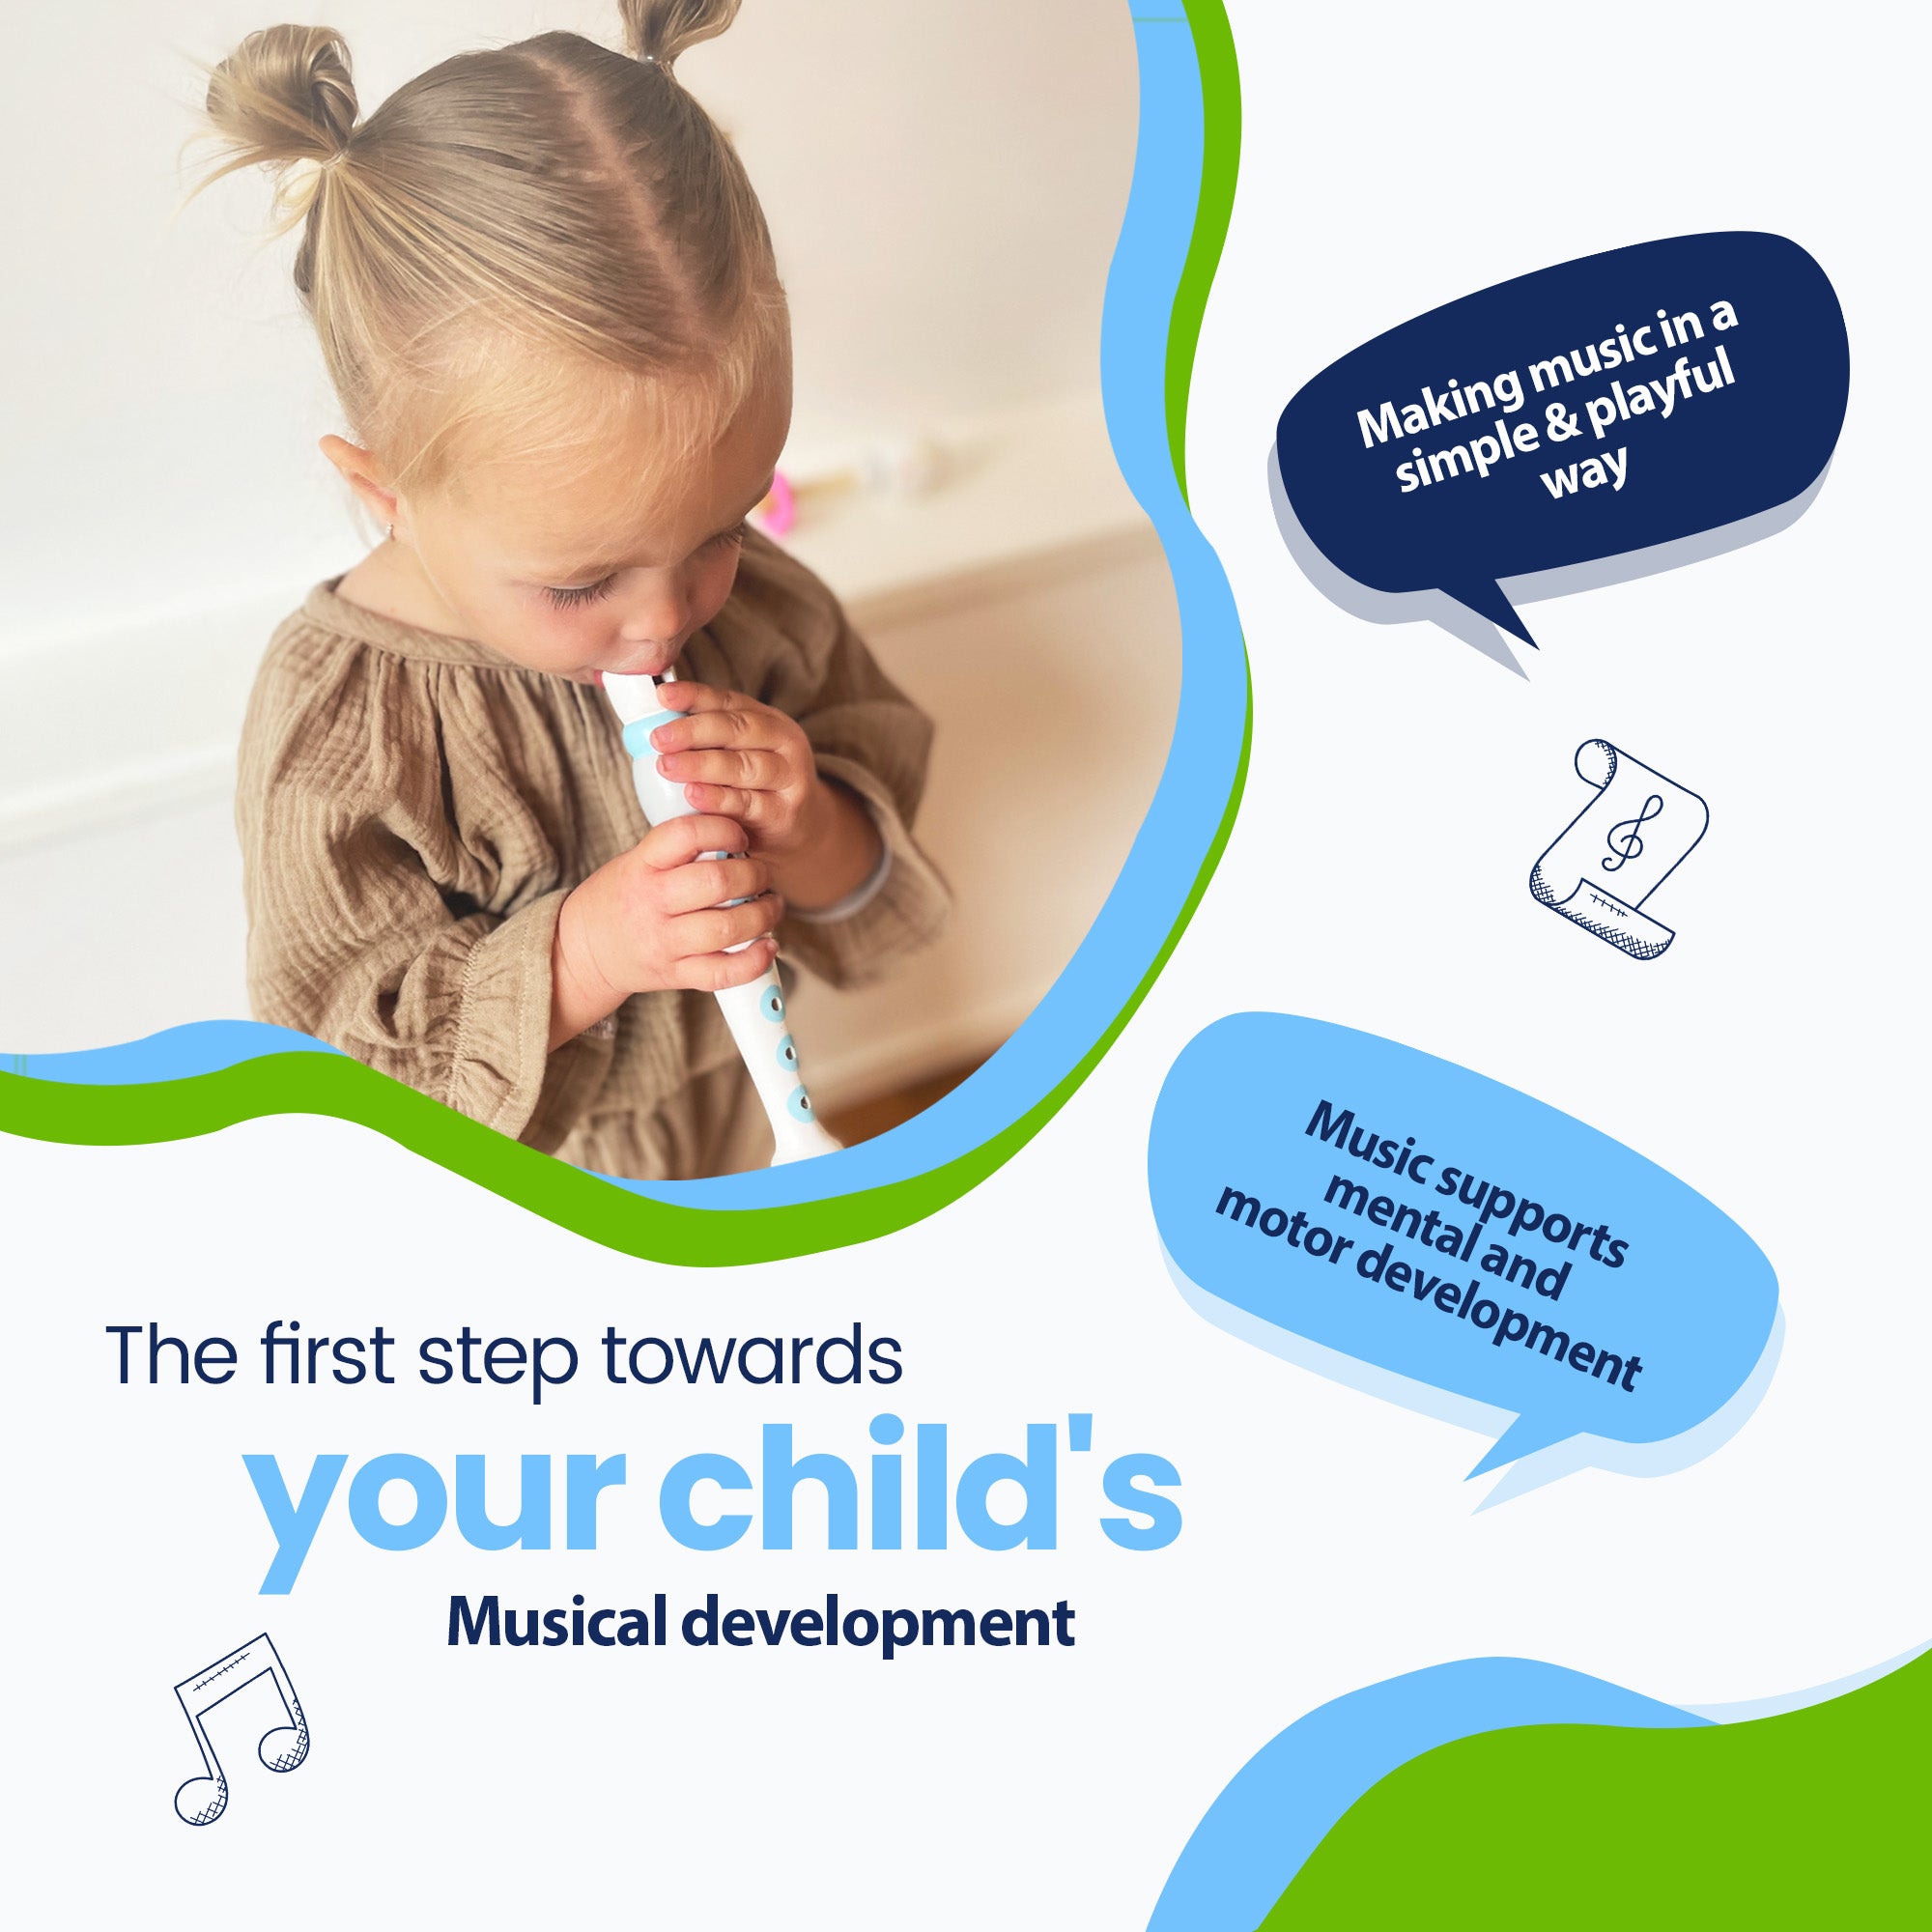 O primeiro passo para o desenvolvimento musical do seu filho - Fazer música de forma simples e lúdica - A música apoia o desenvolvimento mental e motor